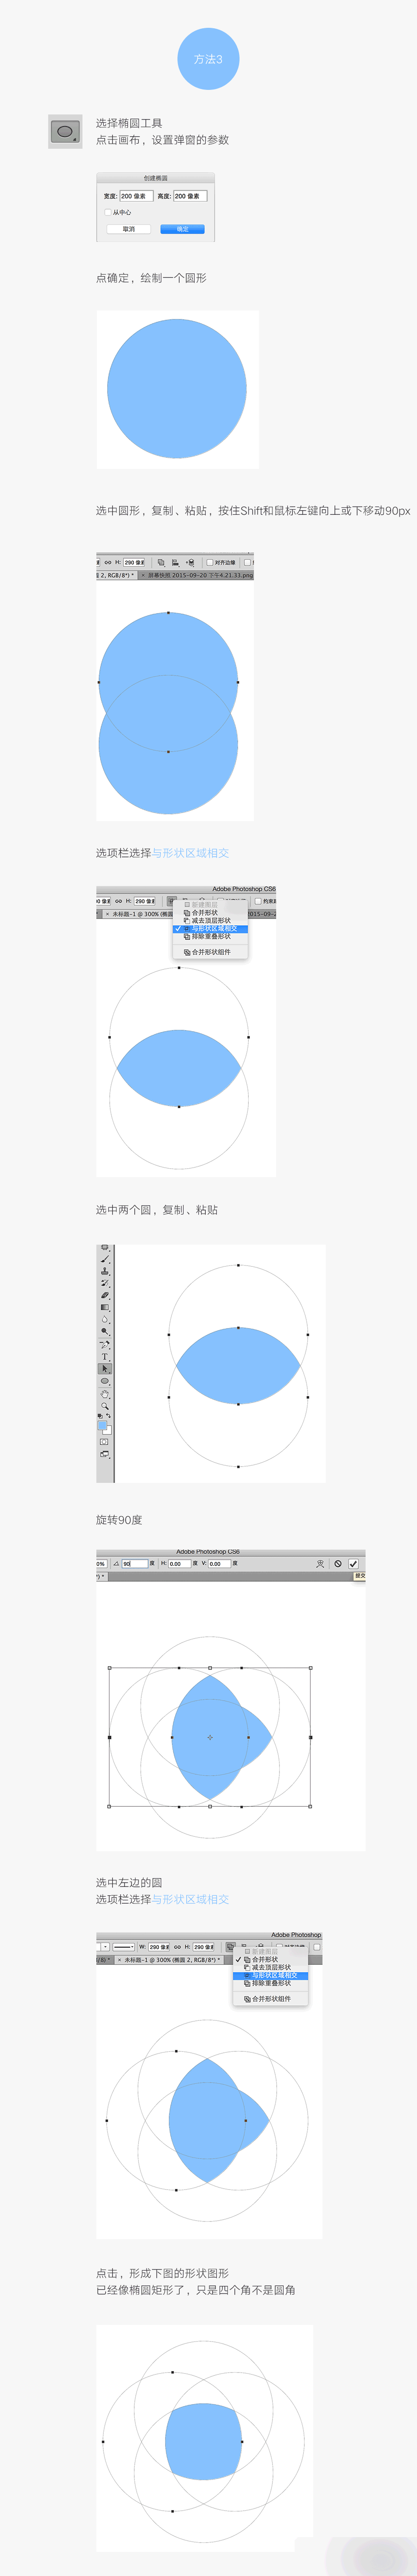 PS绘制APP背景超级椭圆矩形图标的三种方法